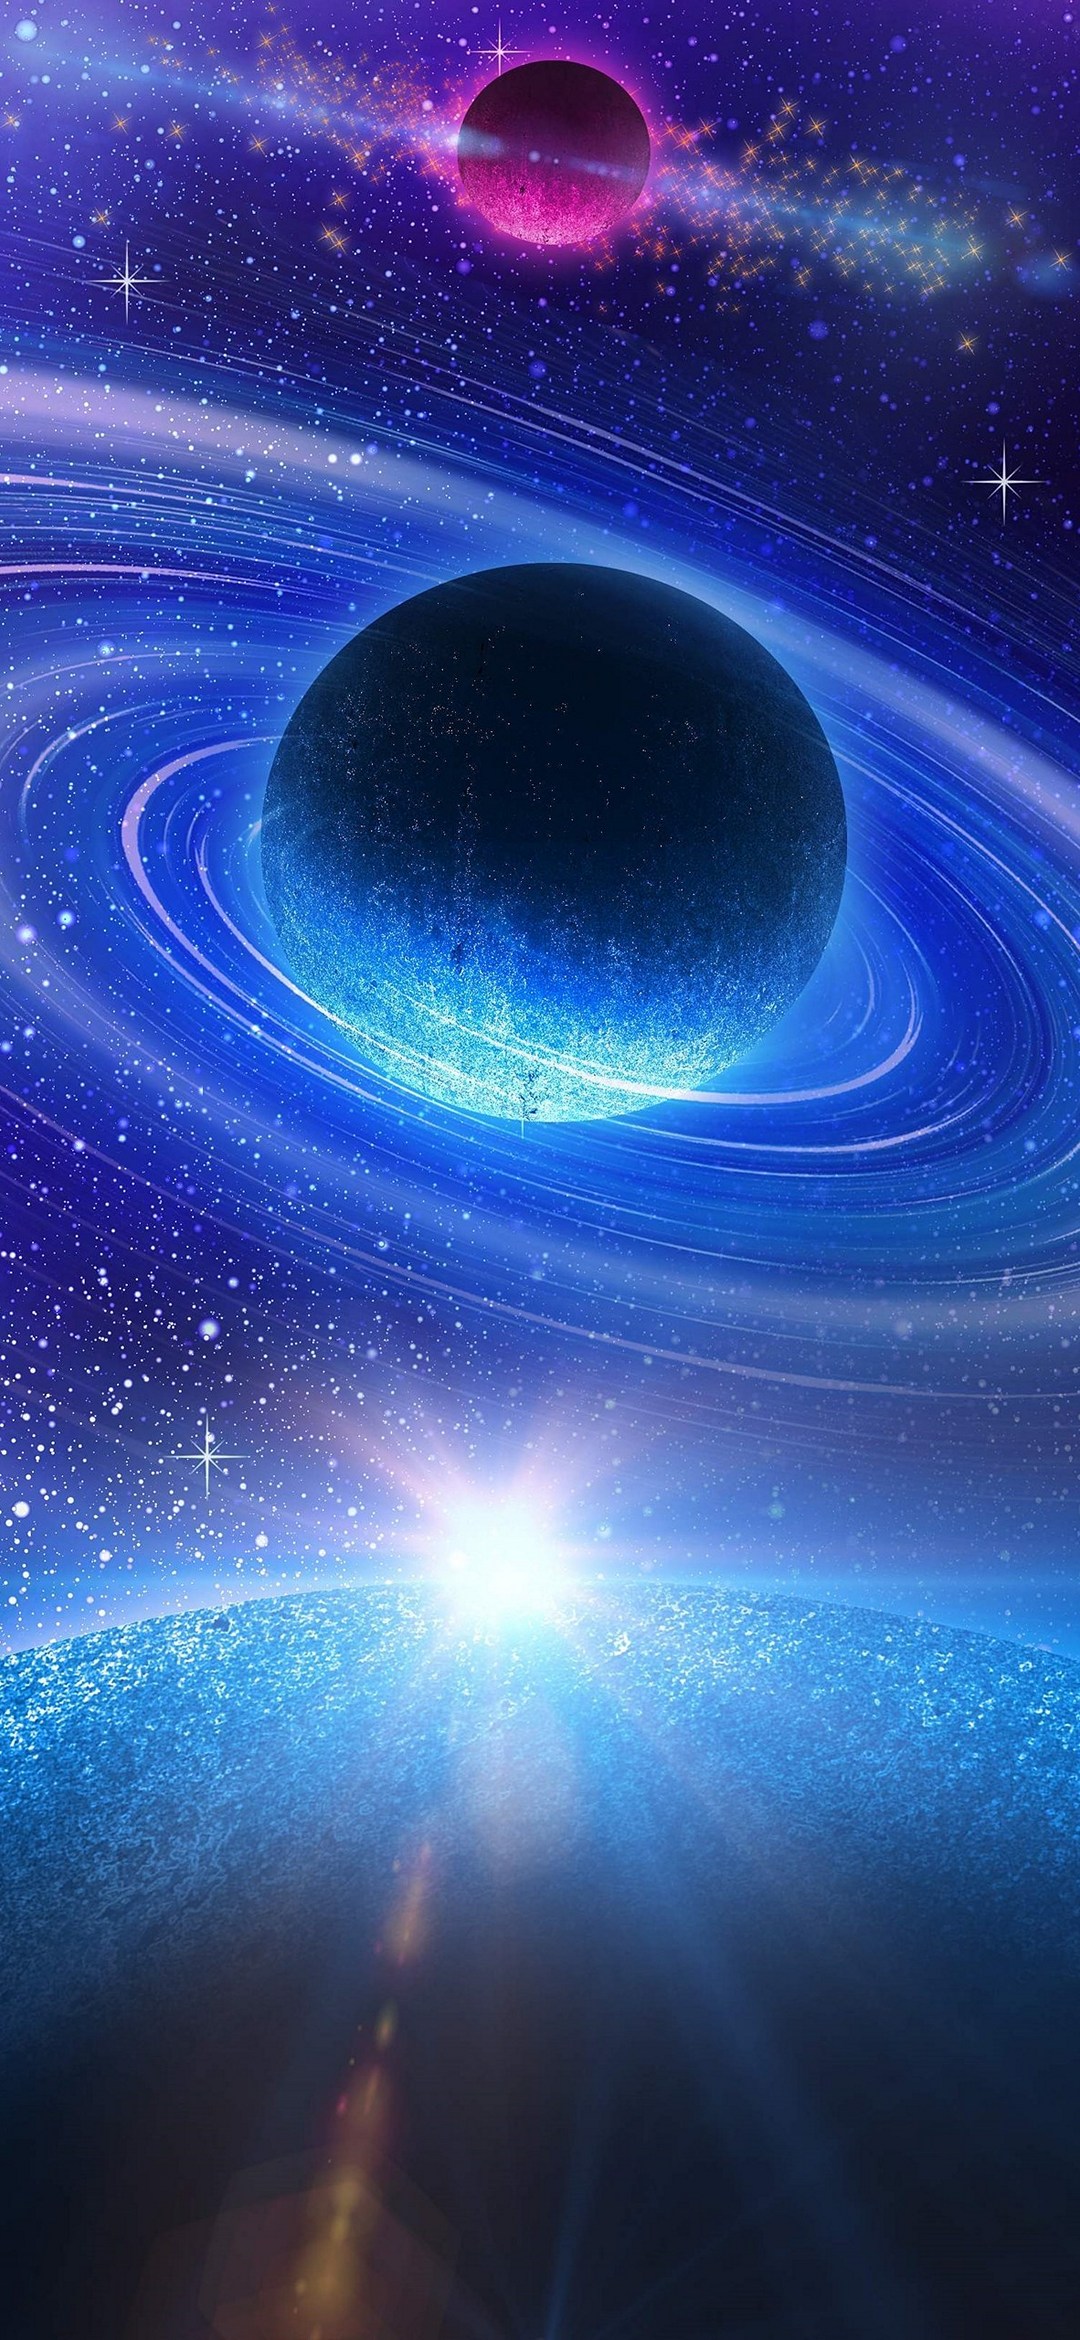 青い惑星と紫の惑星と銀河 Galaxy A30 Android 壁紙 待ち受け Sumaran